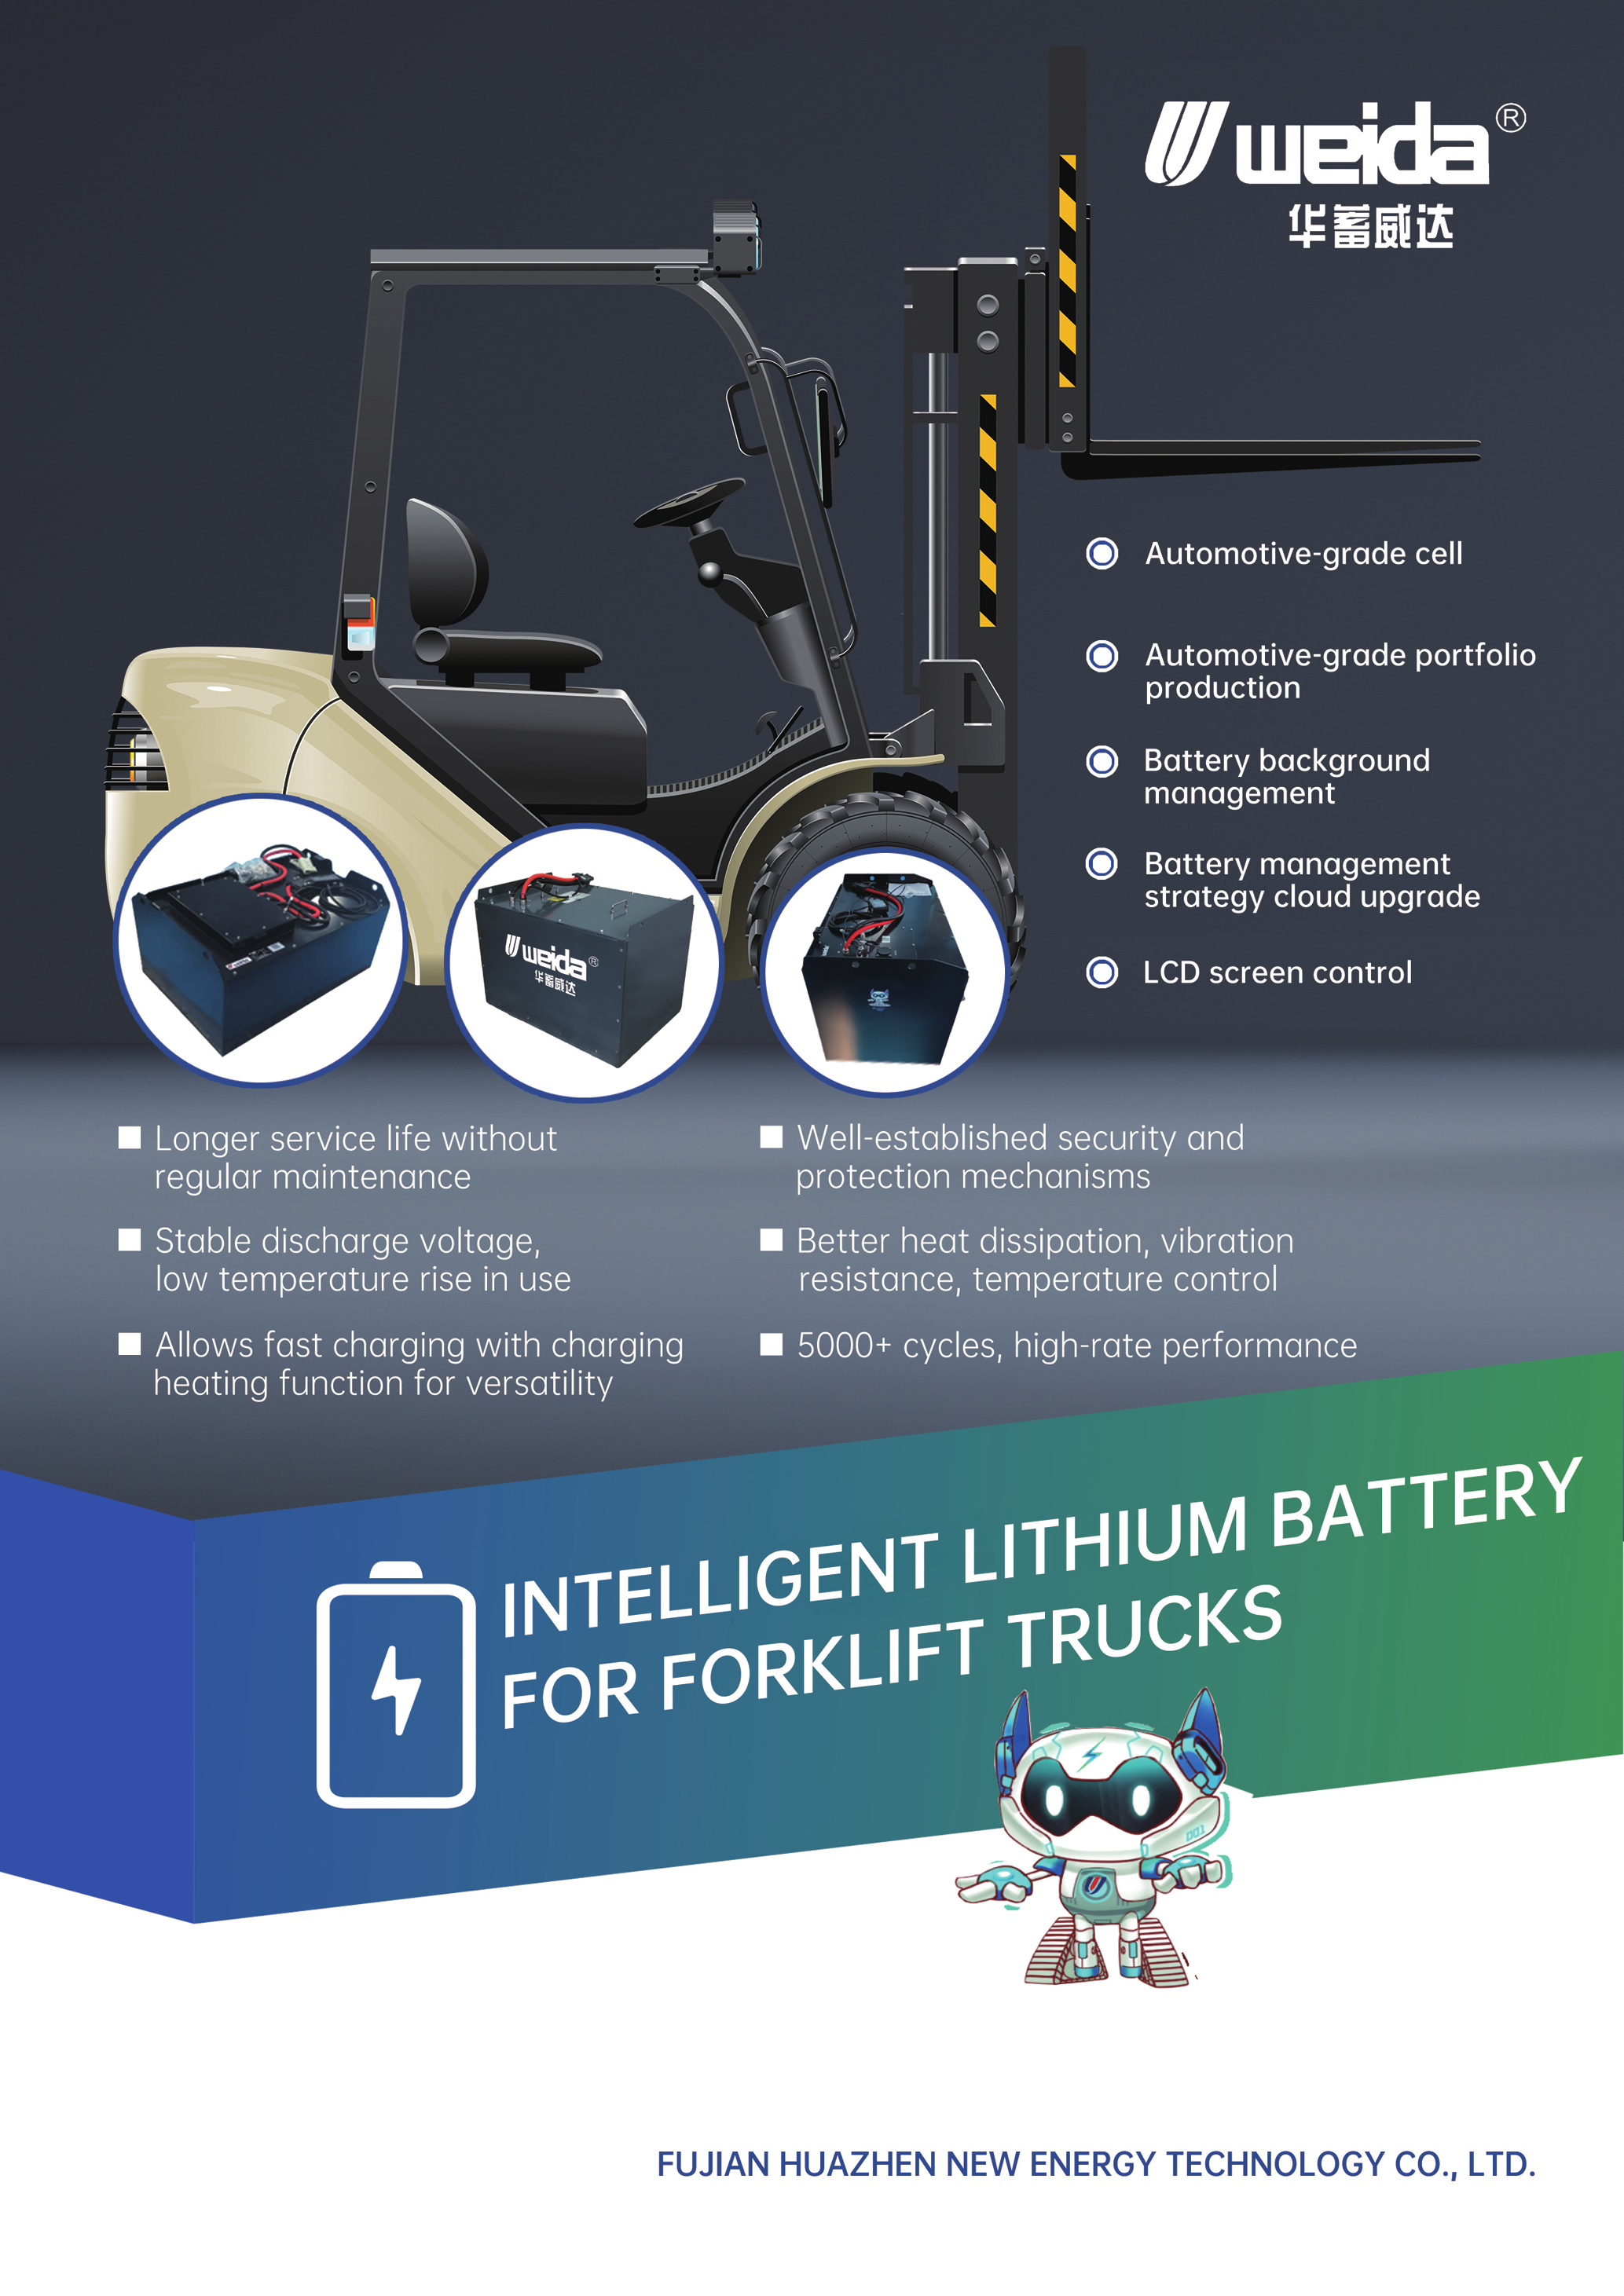 Intelligent Lithium Battery for Forklift Trucks